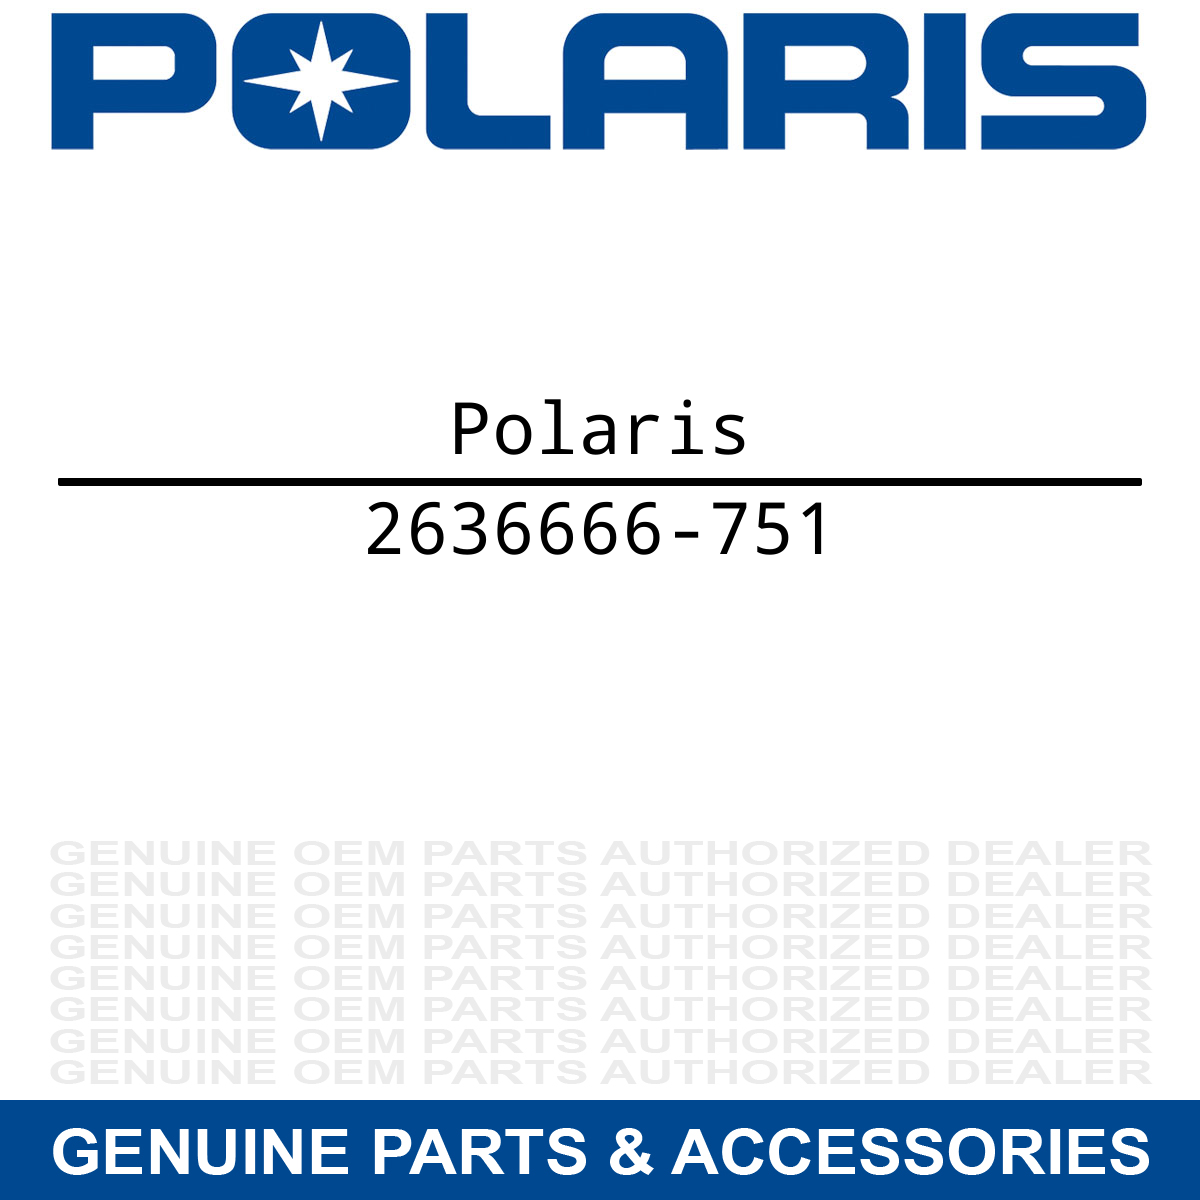 Polaris 2636666-751